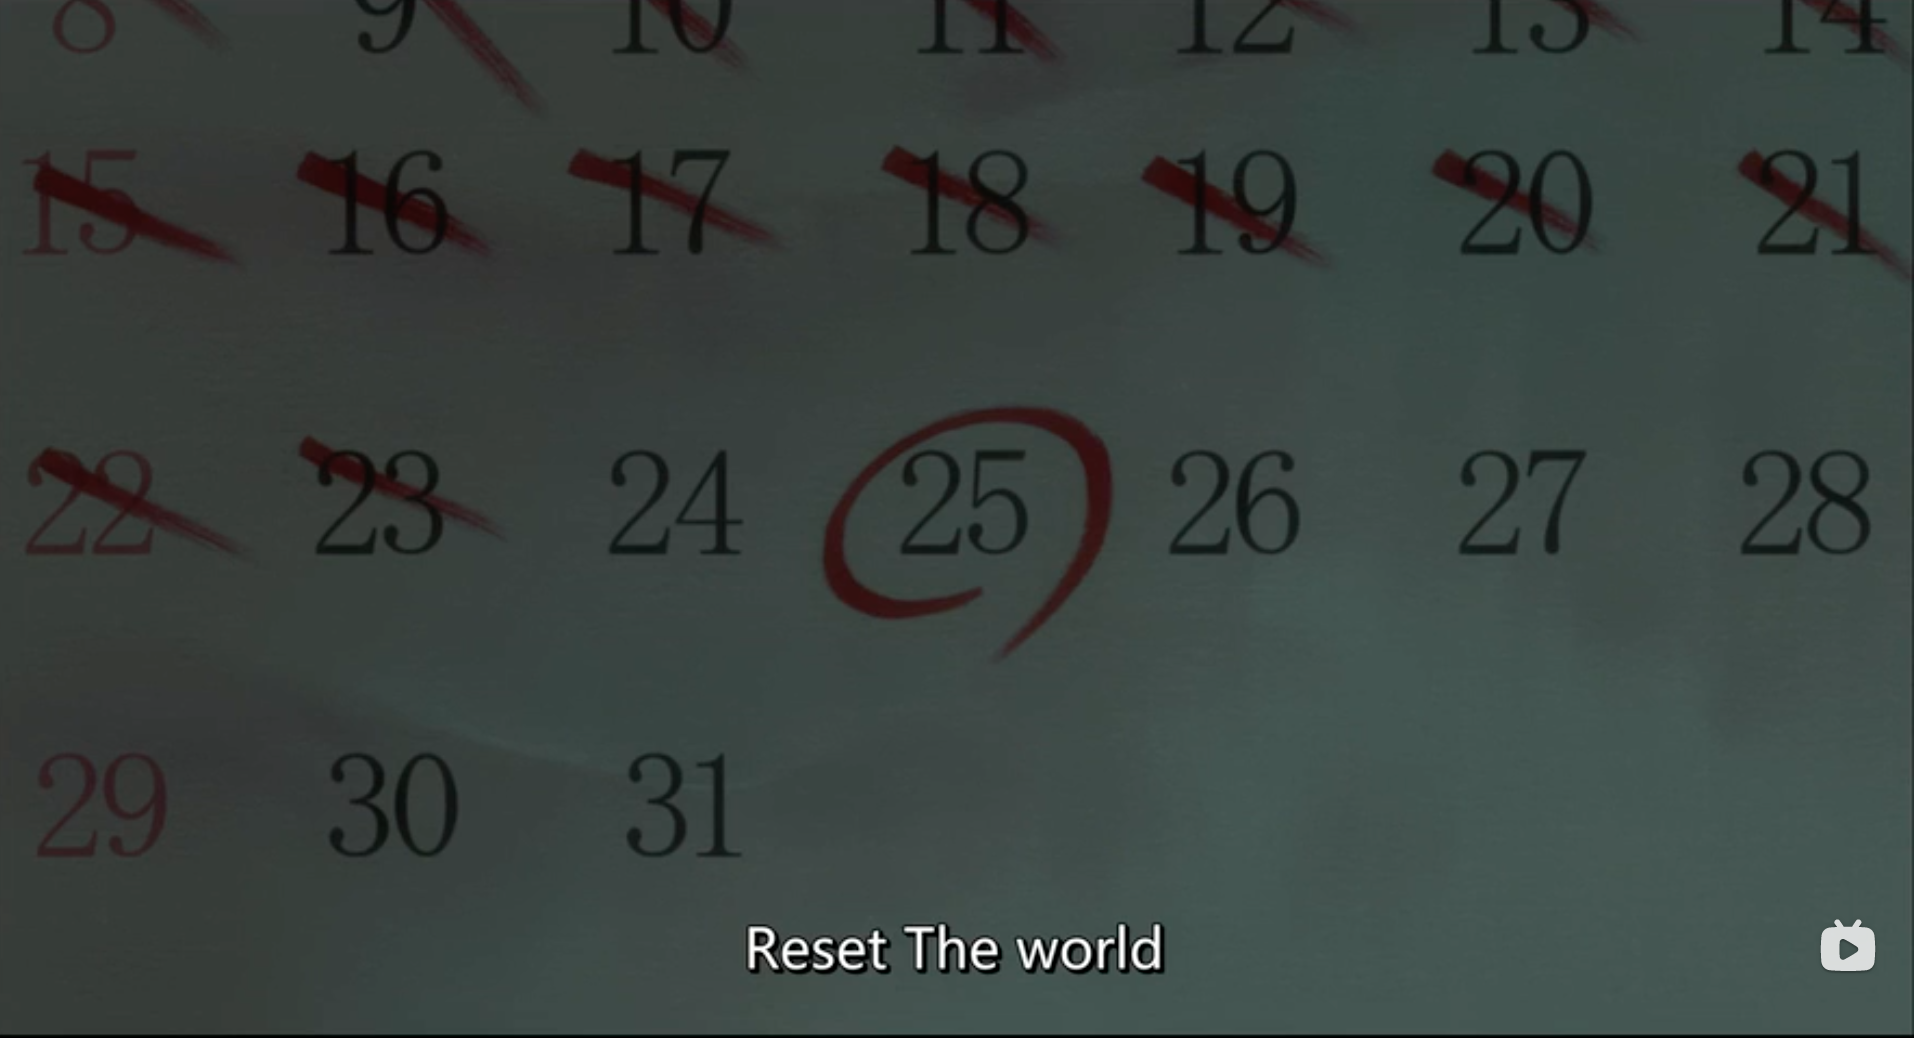 他将25日定为执行计划“Reset The World”的最终日期